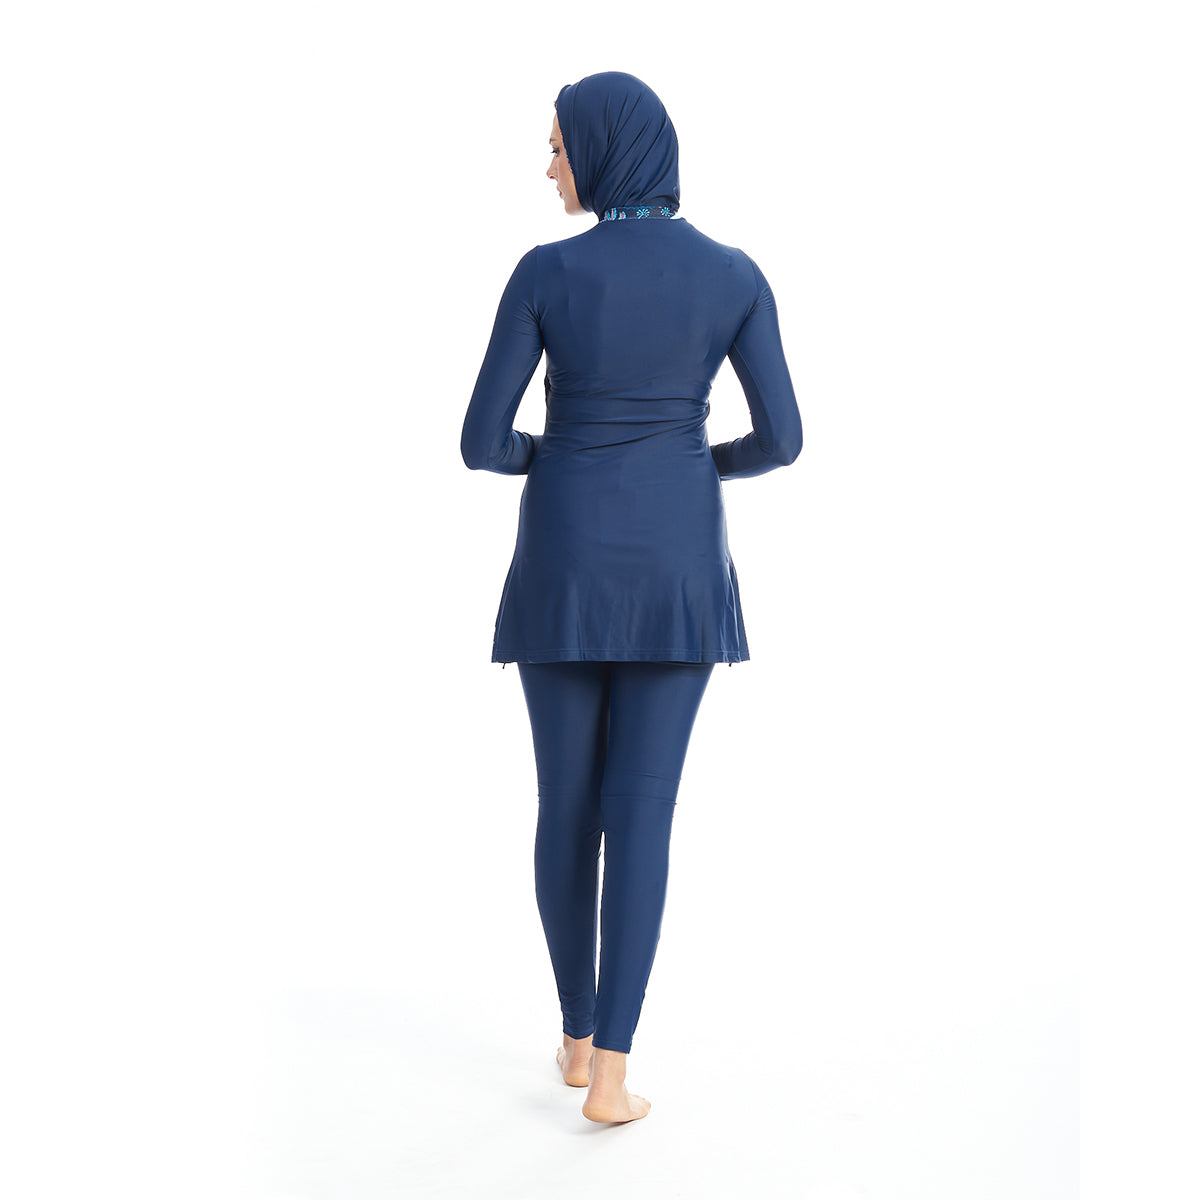 Energetics Burkini Full Covered Swimsuit For Women + Bonnet, Dark Blue